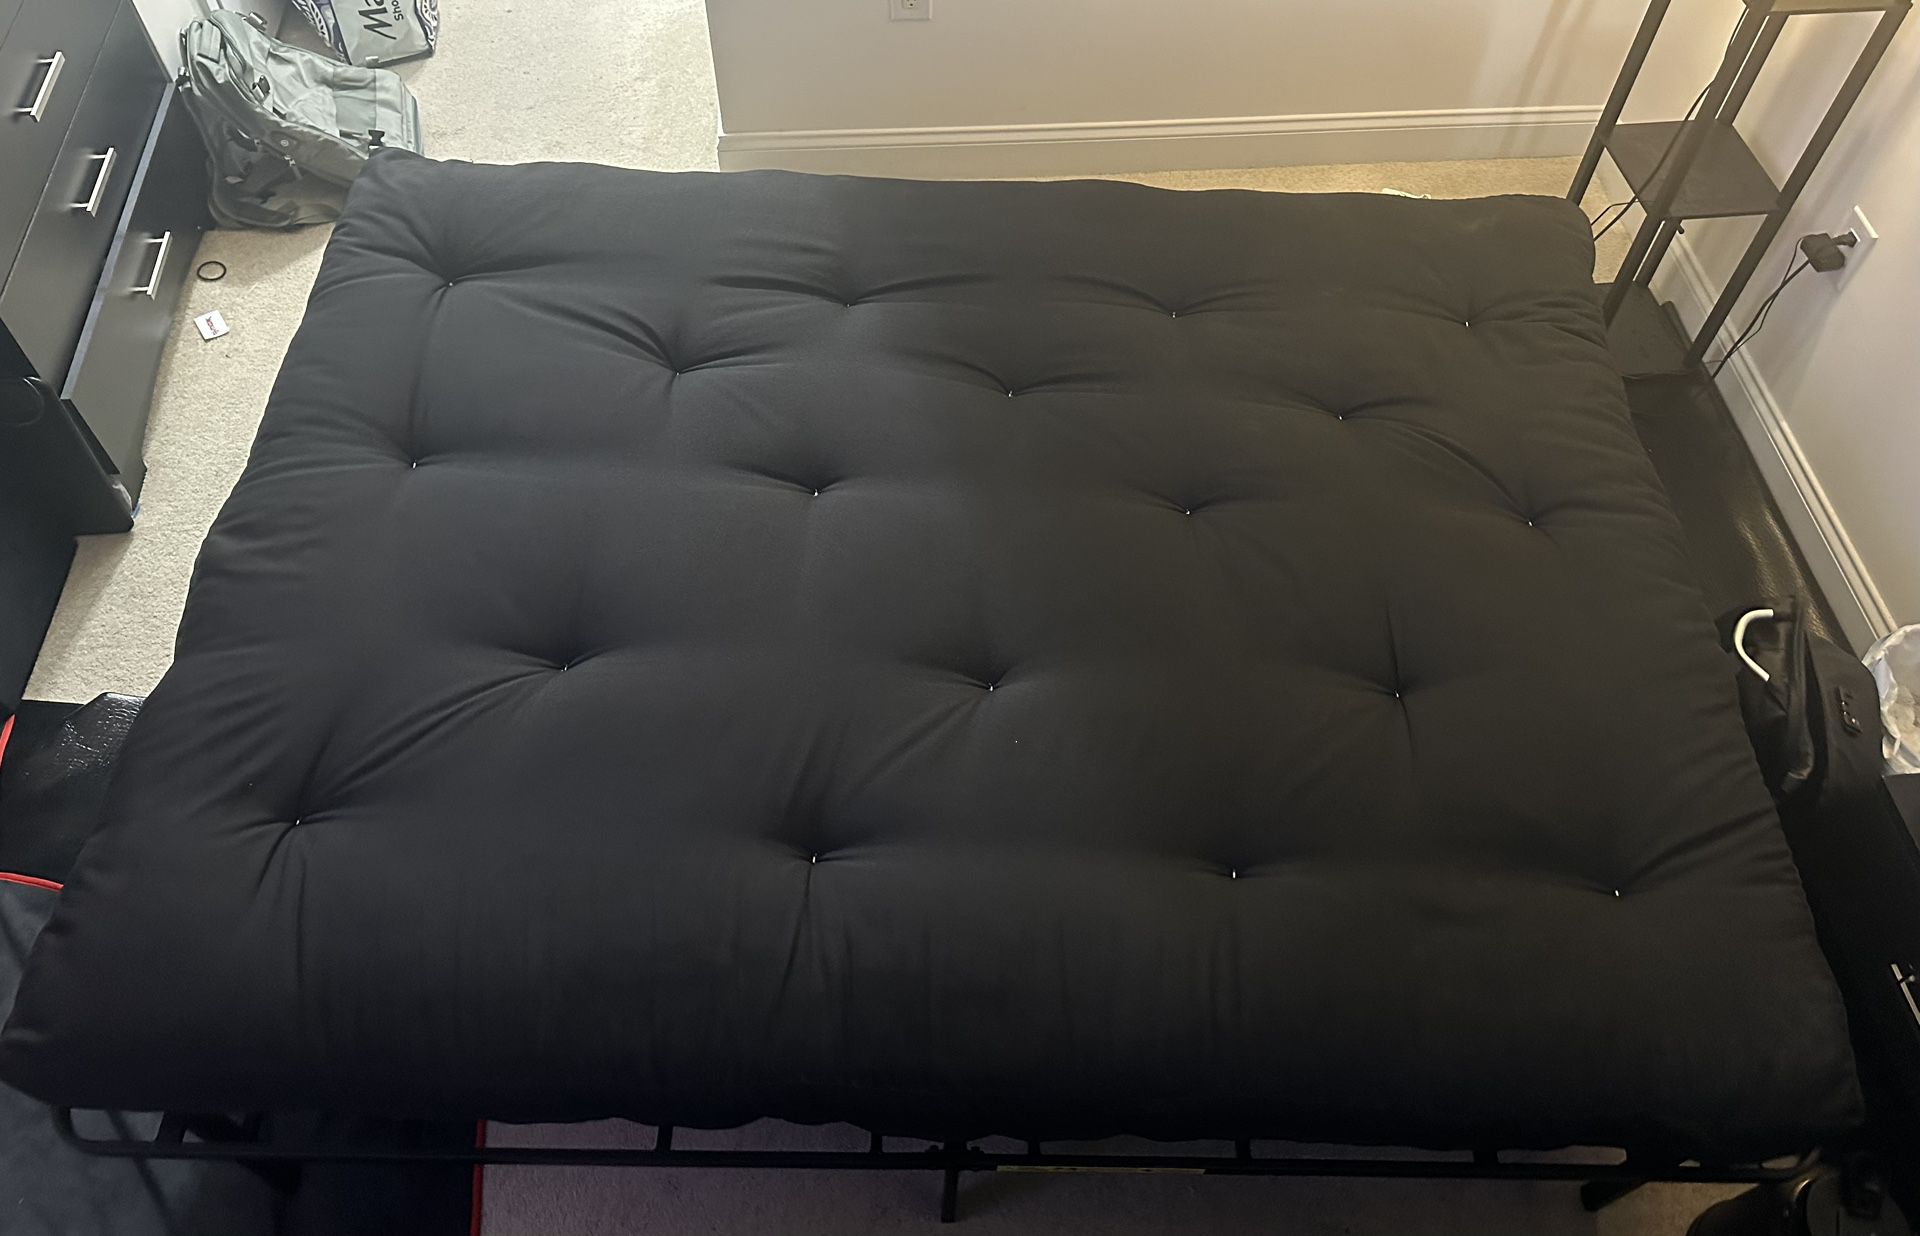 Queen size Futon mattress with 2 futon bed frames